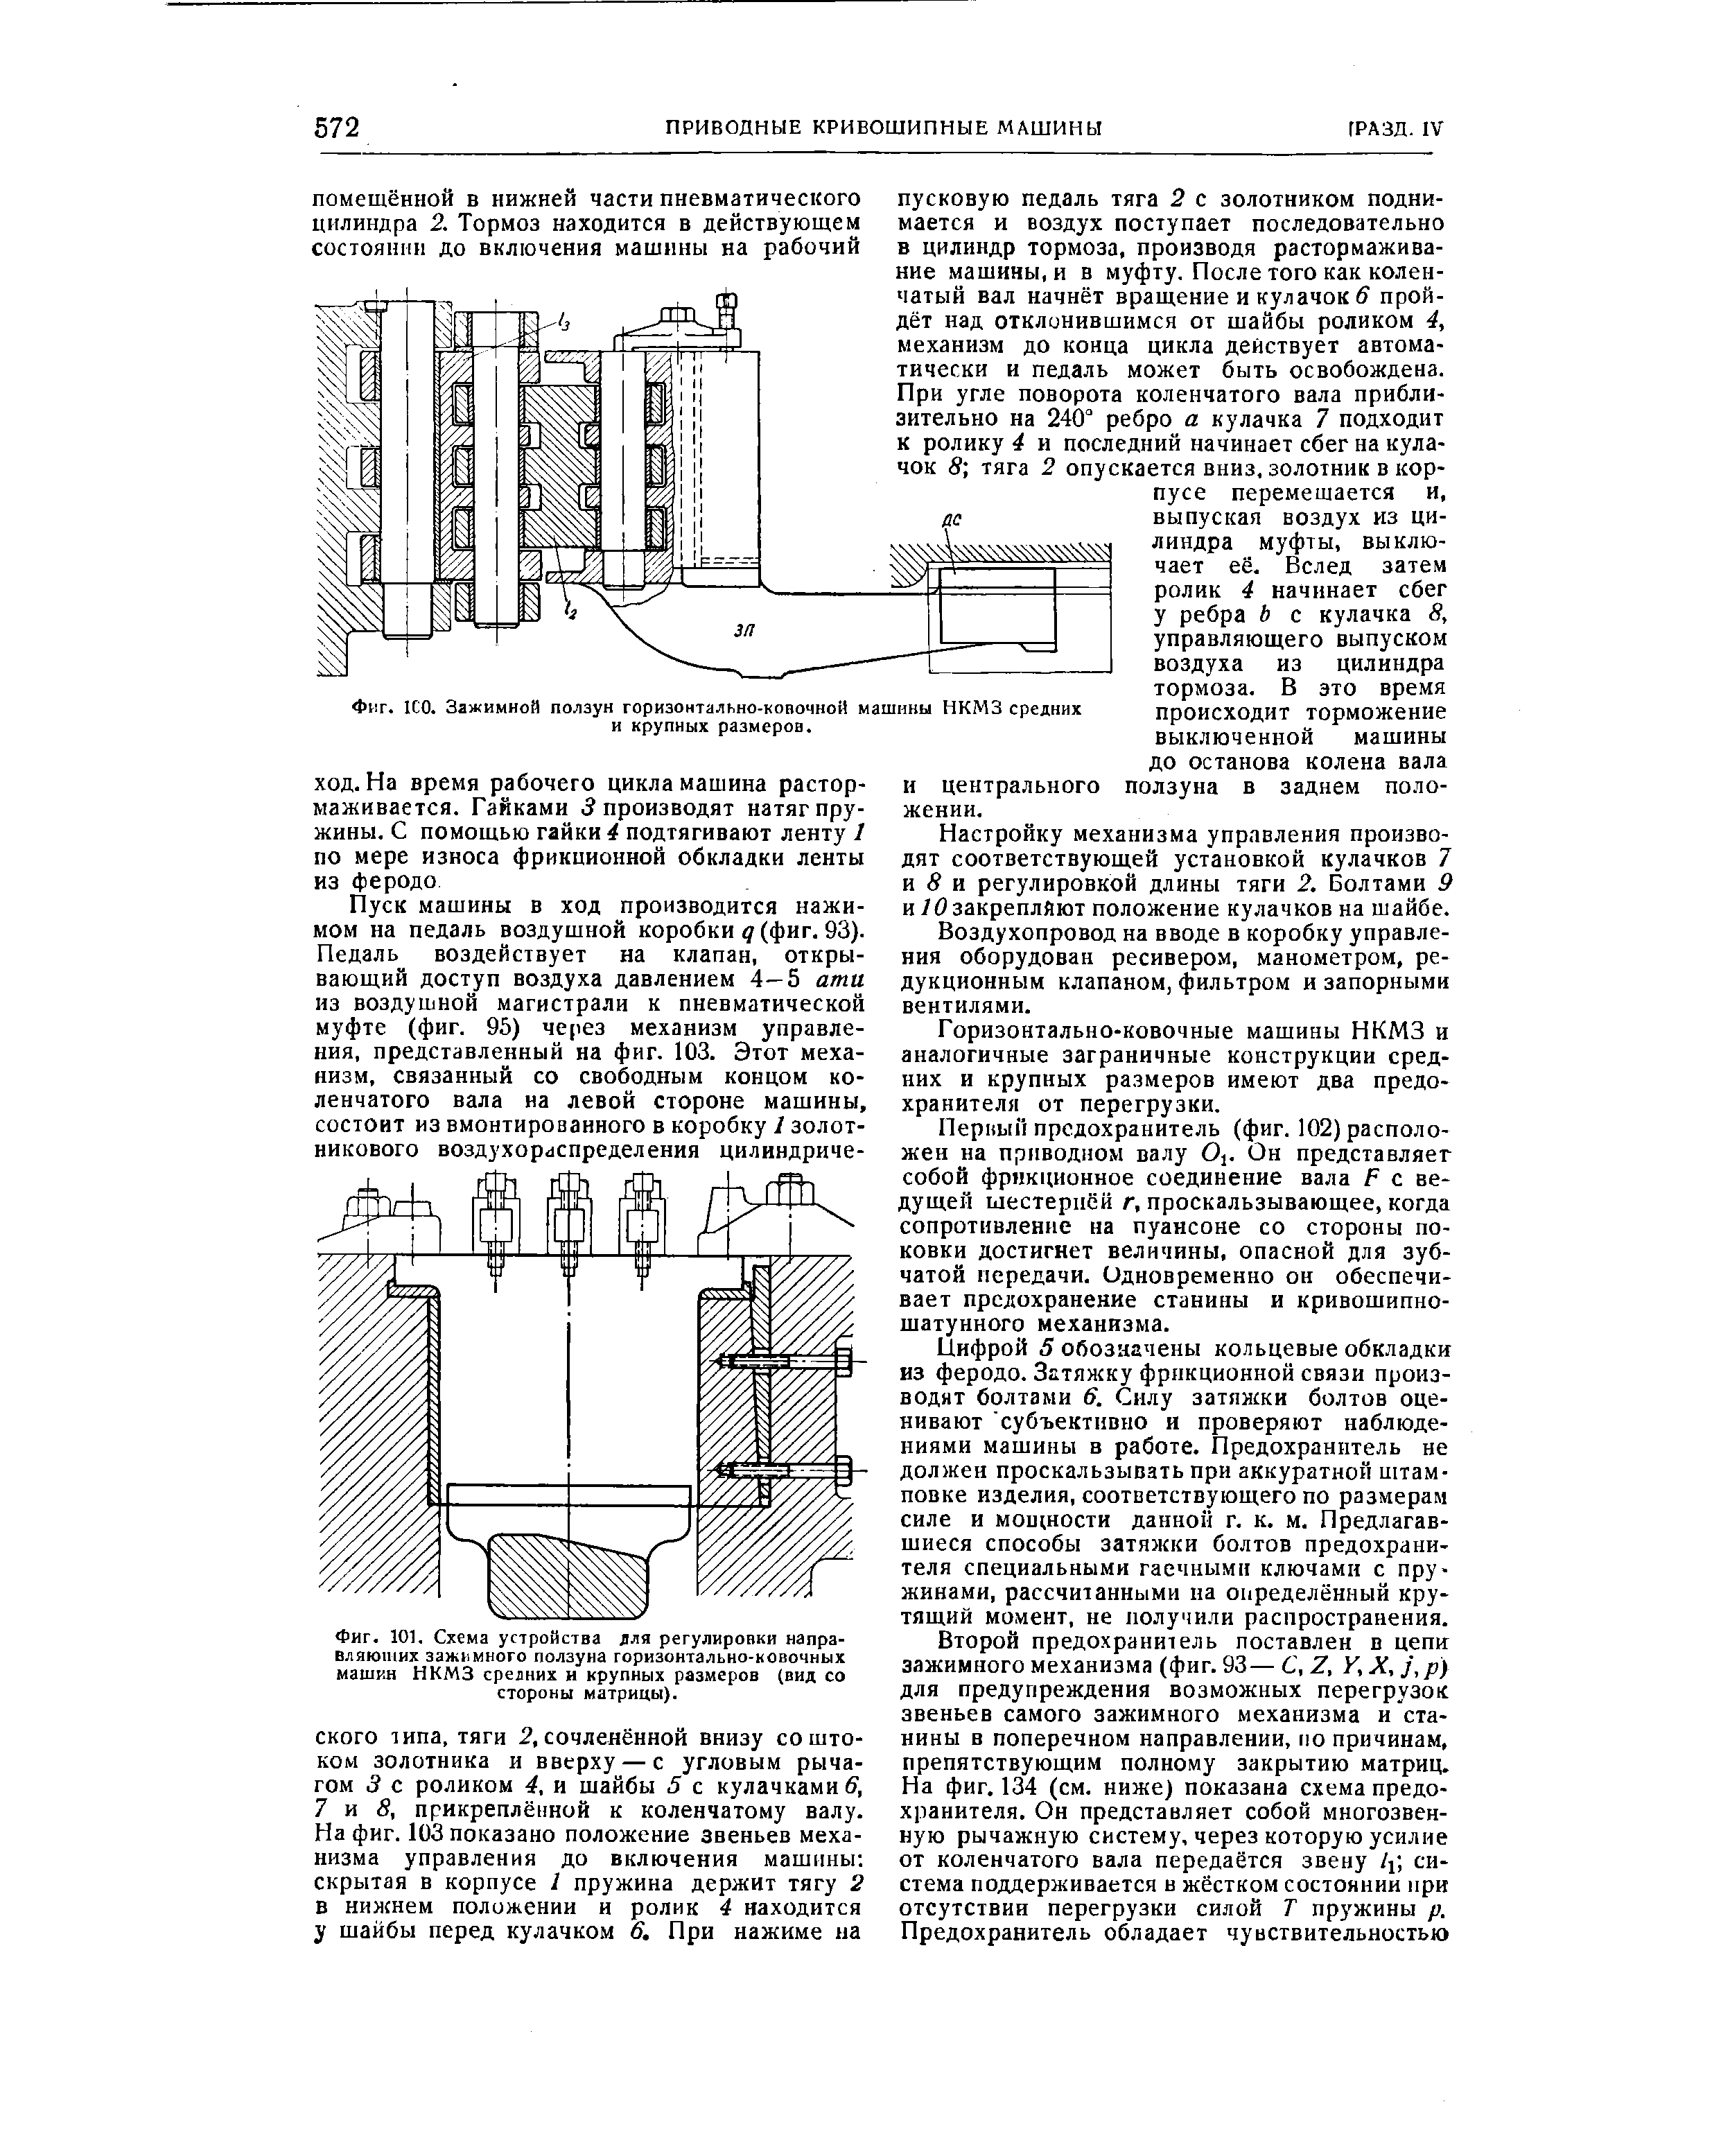 Фиг. 101, Схема устройства для регулировки направляющих зажимного ползуна горизонтально-ковочных машин НКМЗ срелних и крупных размеров (вид со стороны матрицы).
